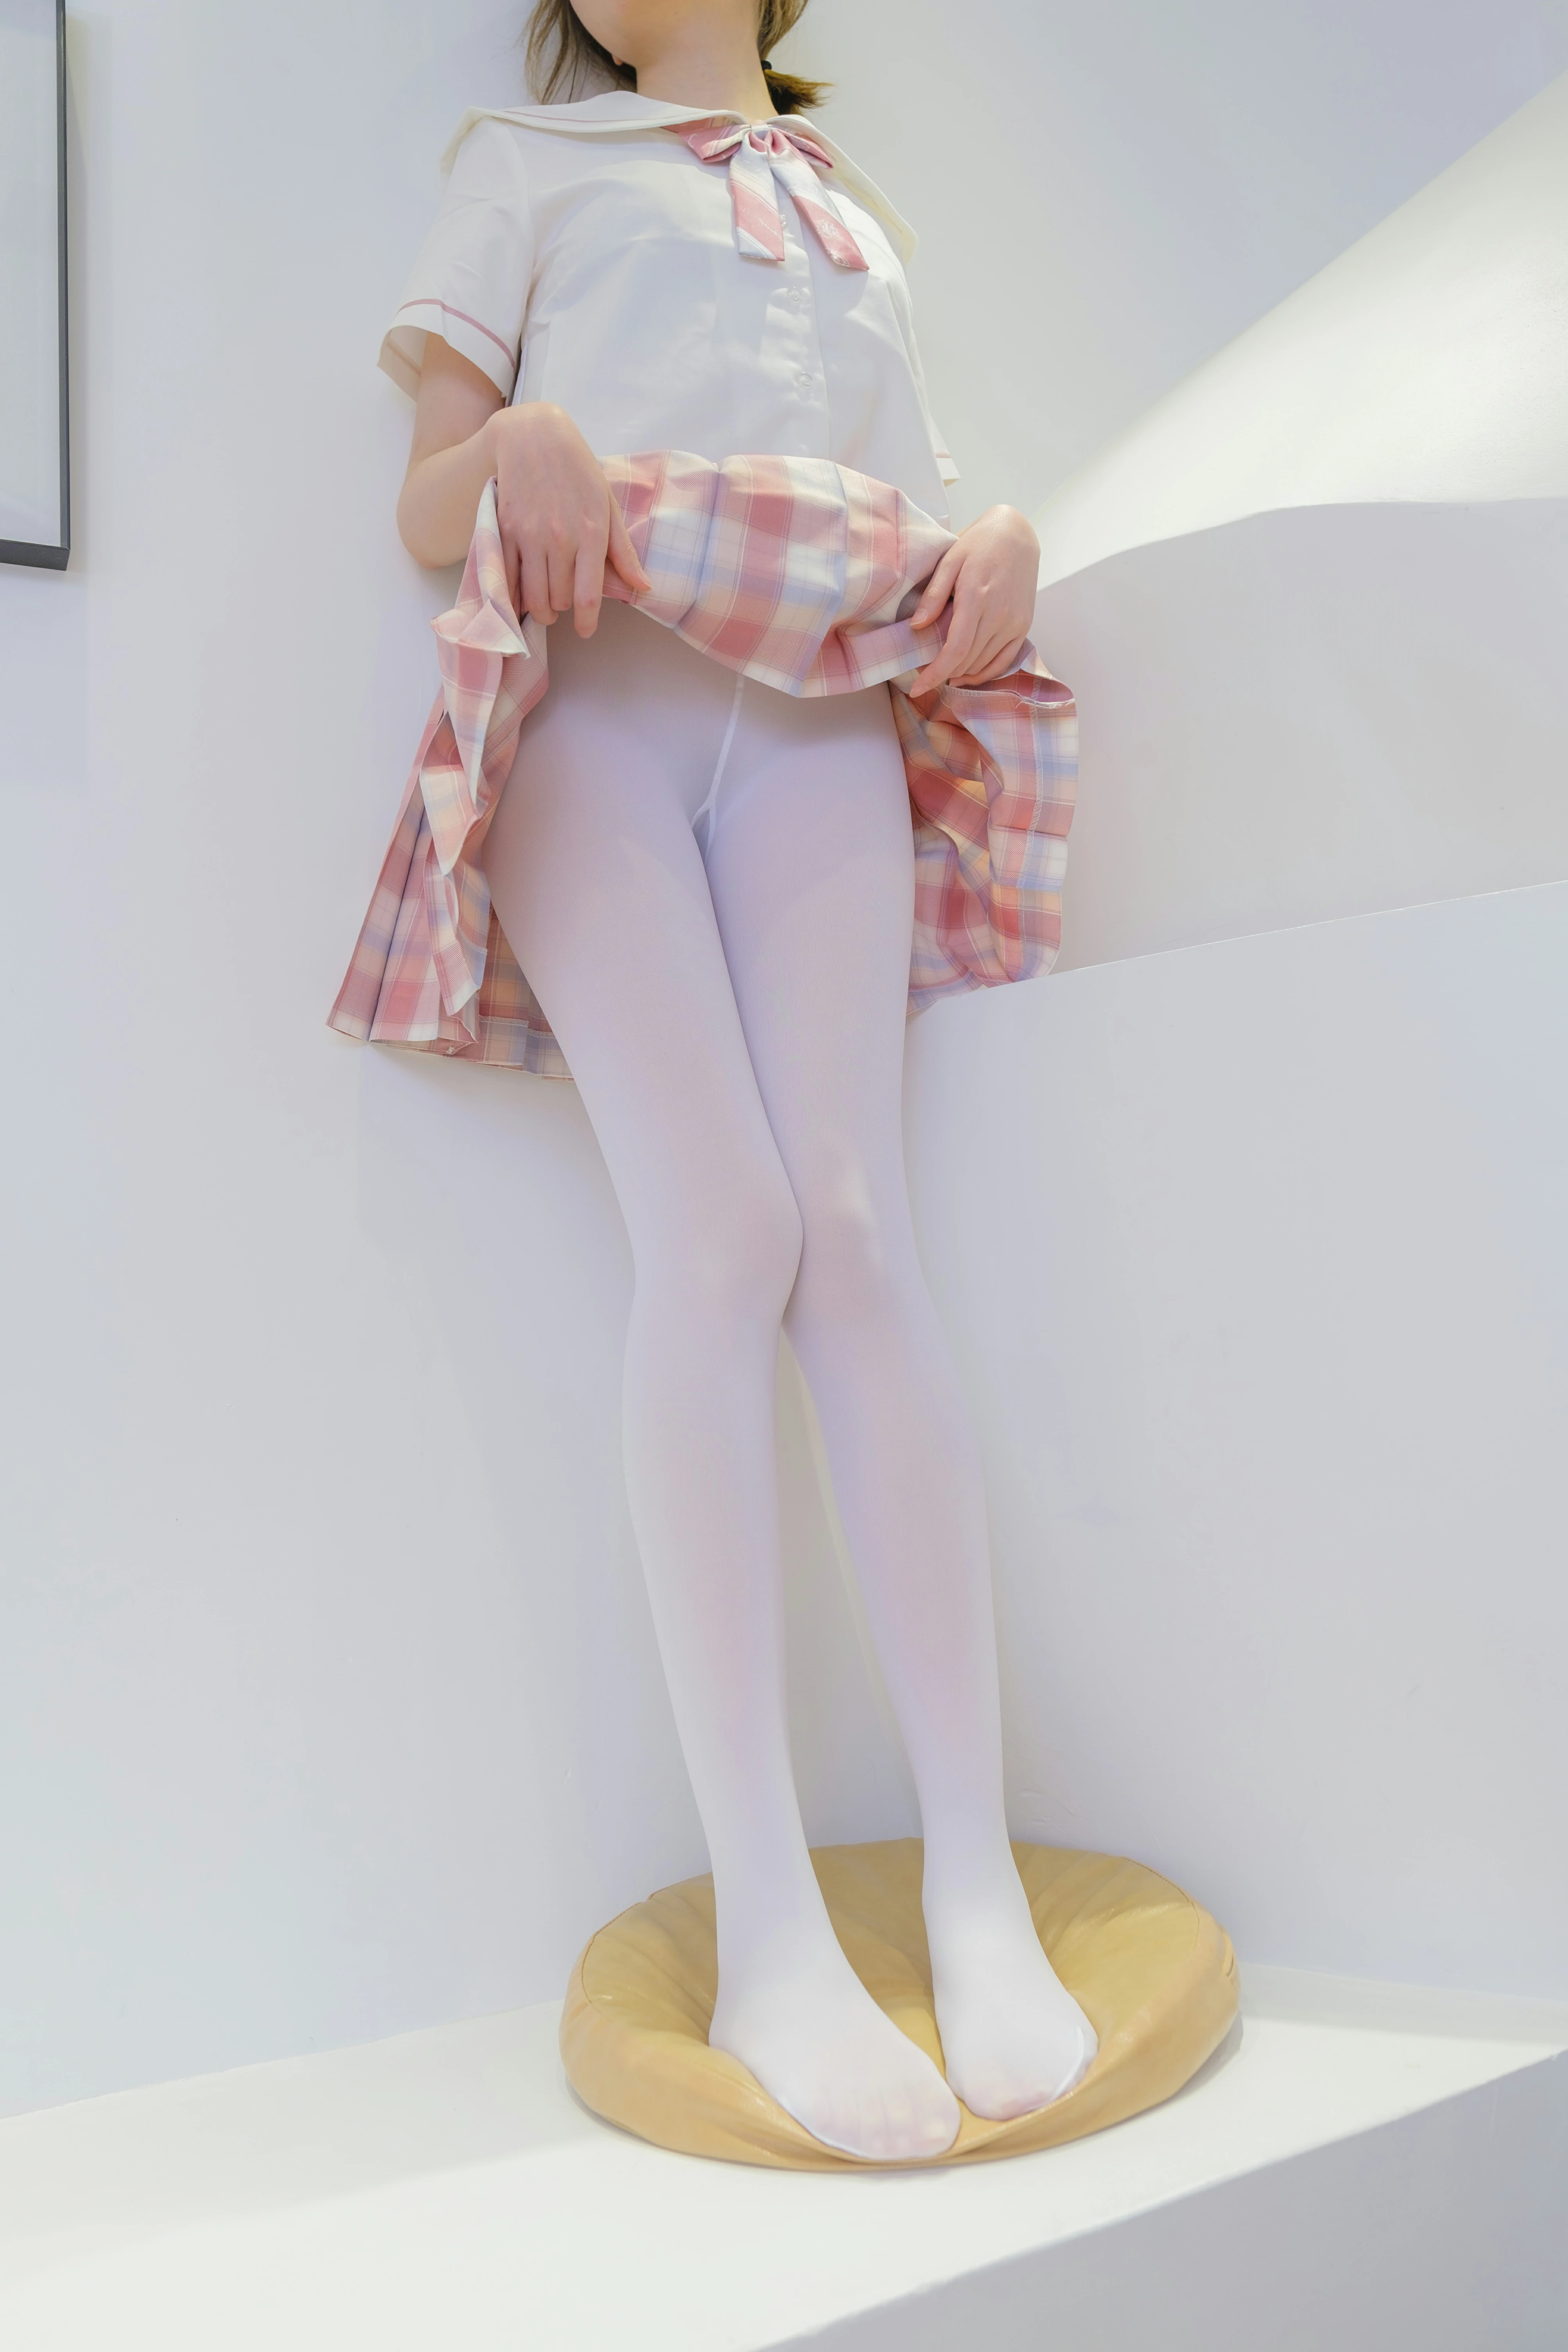 [森萝财团]GZAY3 酒店JK制服小萝莉 白色衬衫与粉色短裙加白色丝袜美腿性感私房写真集,0013